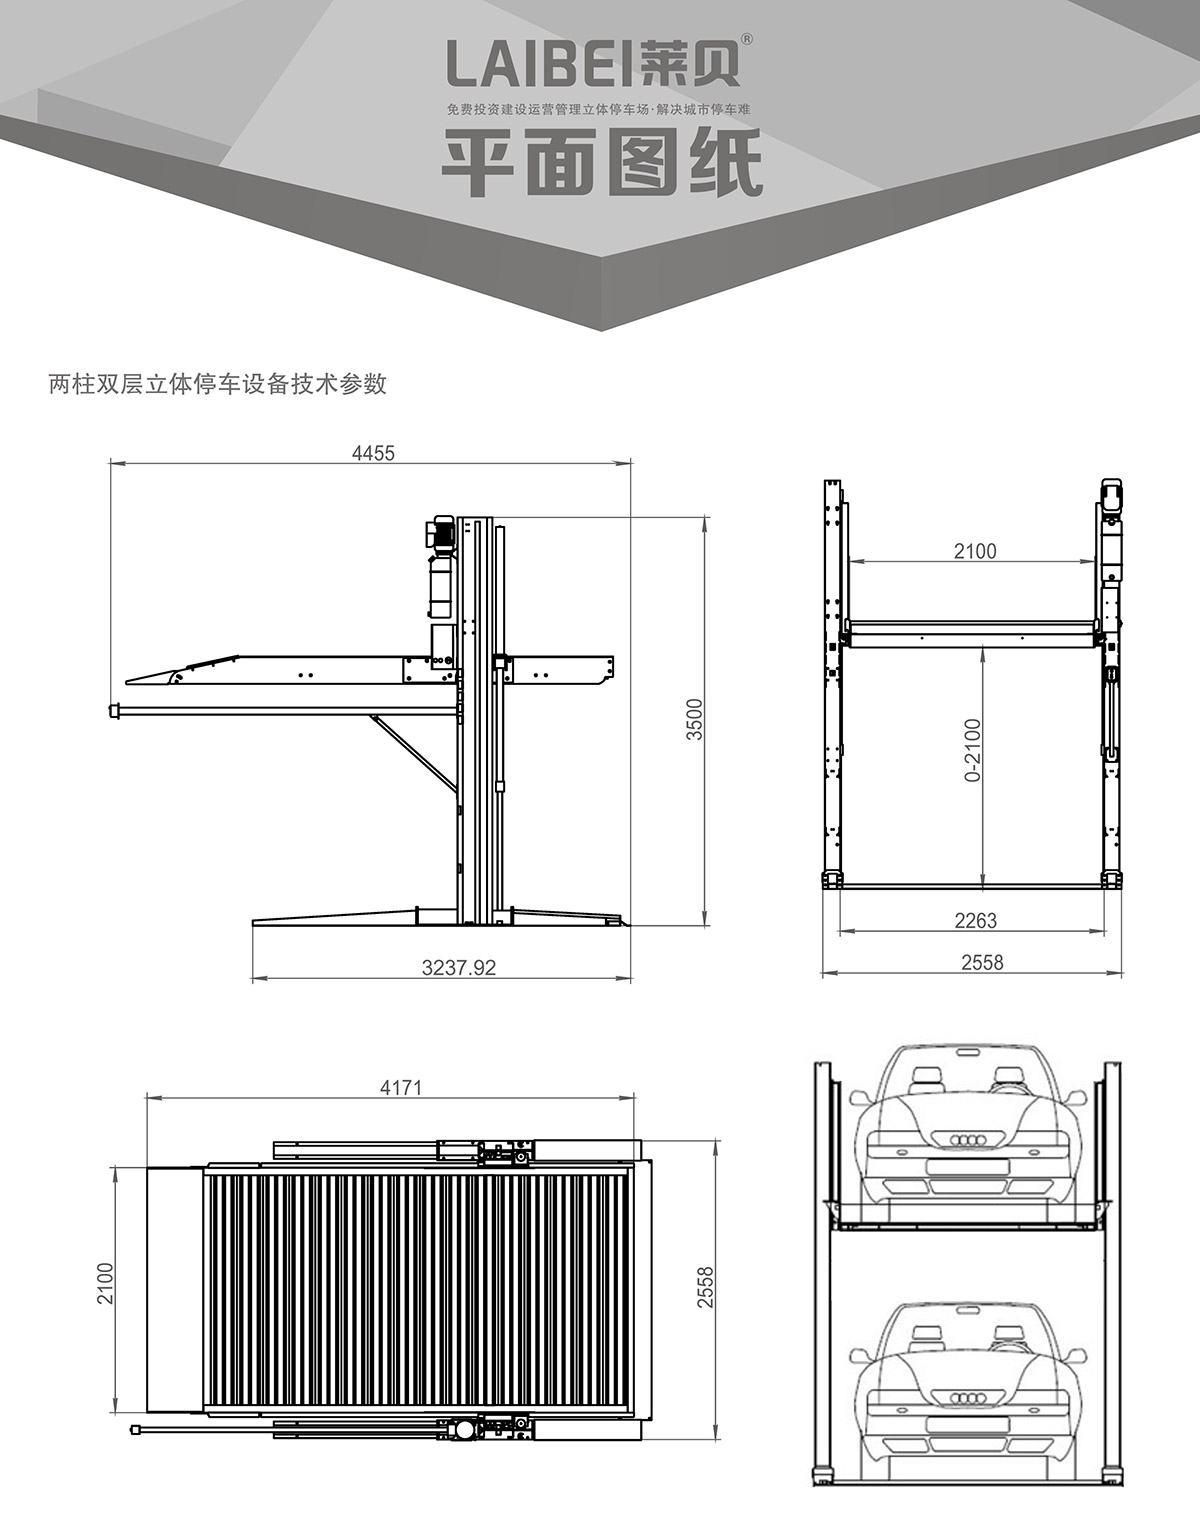 四川PJS两柱简易升降机械车库平面图纸.jpg